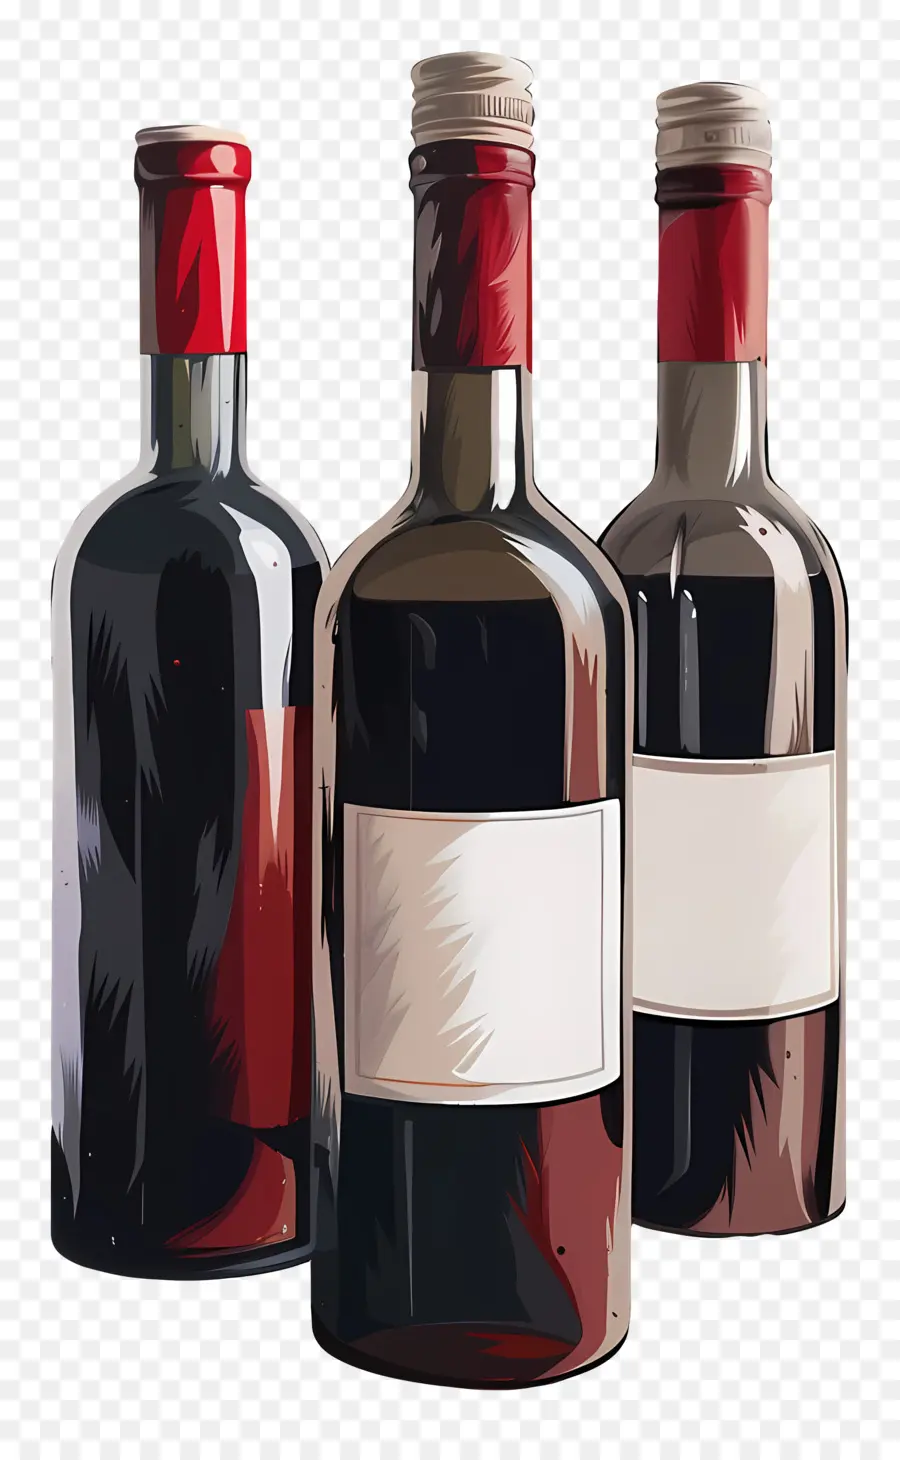 النبيذ，النبيذ الأحمر PNG